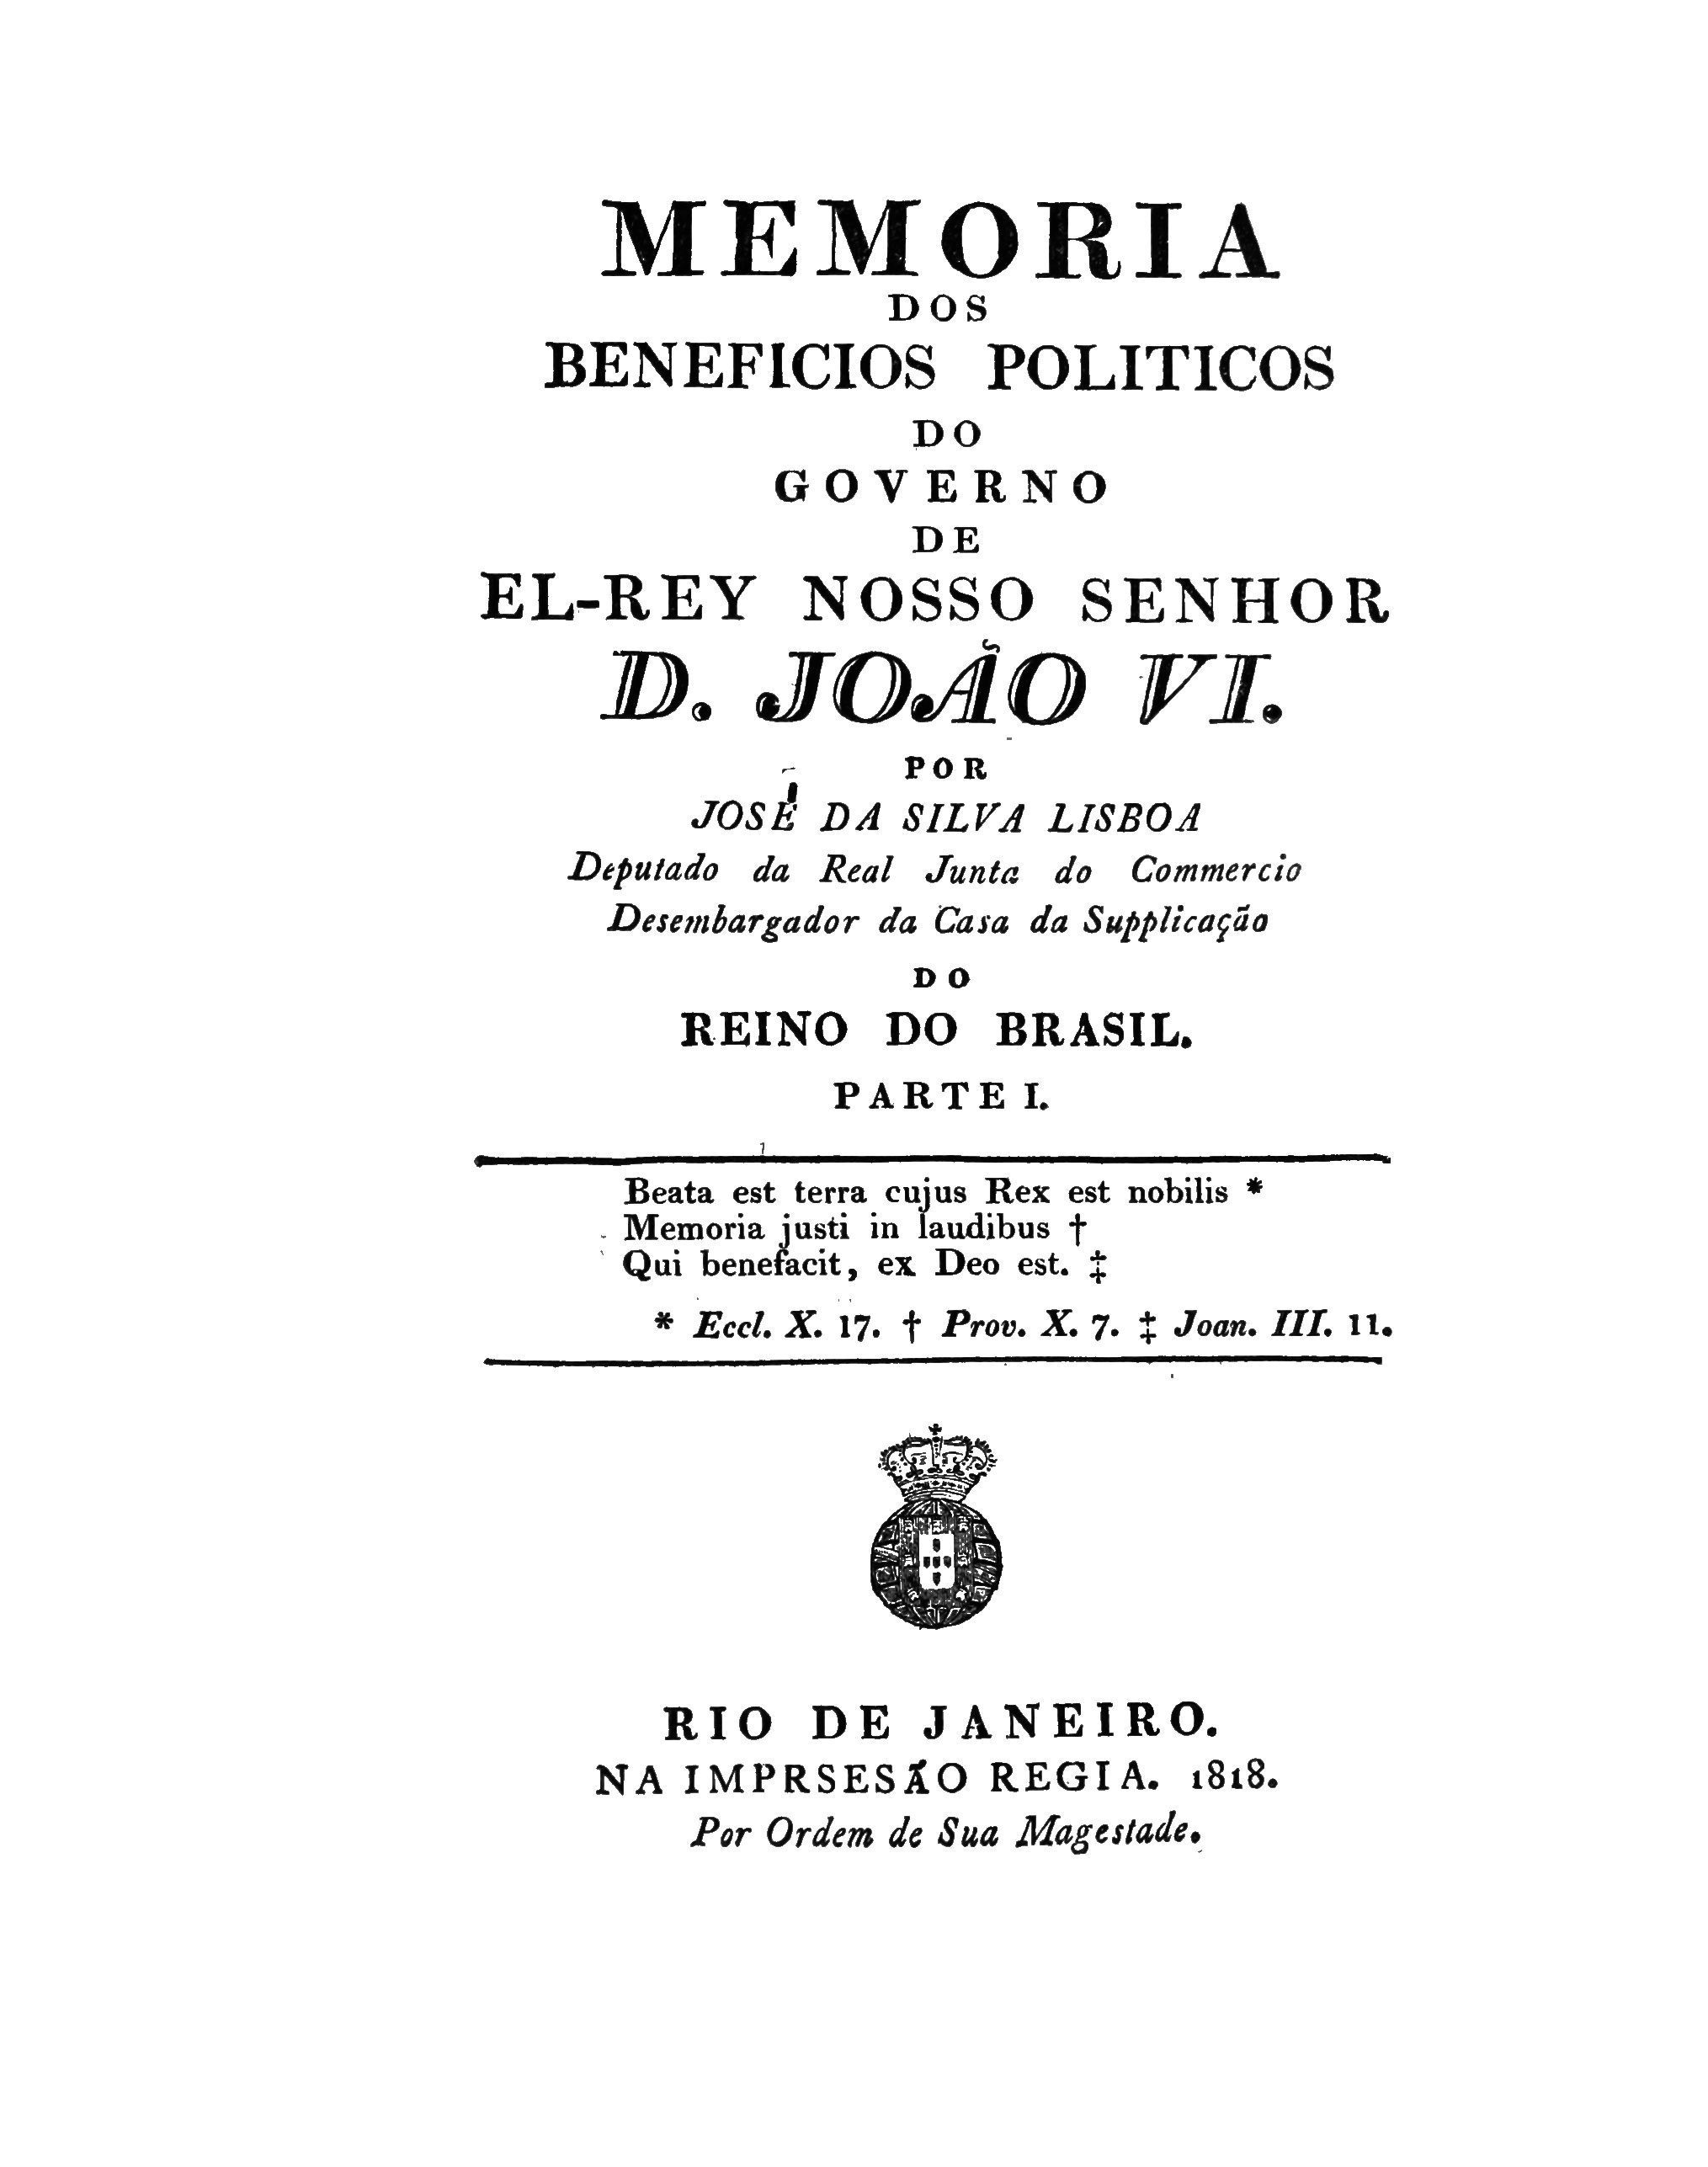 Memoria dos beneficios politicos do governo de El-Rey Nosso Senhor D. João VI J. da Silva Lisboa Visconde de Cairù. 1818